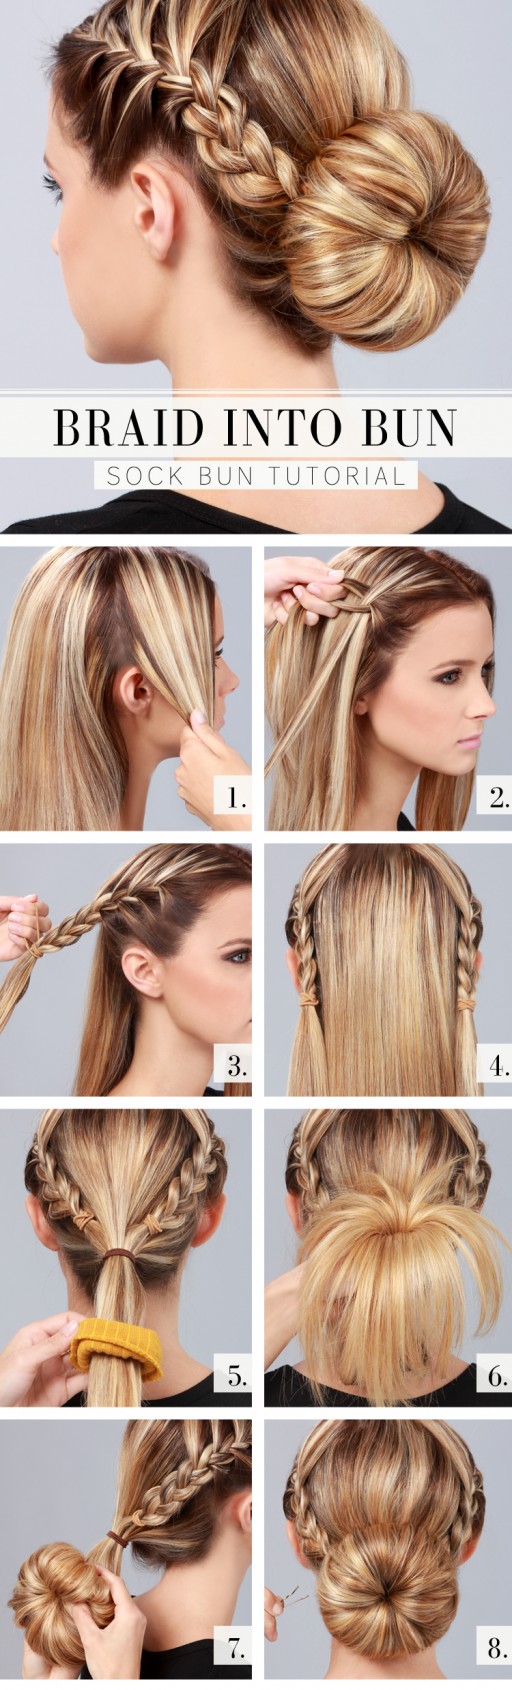 -braid-into-bun-hair-style